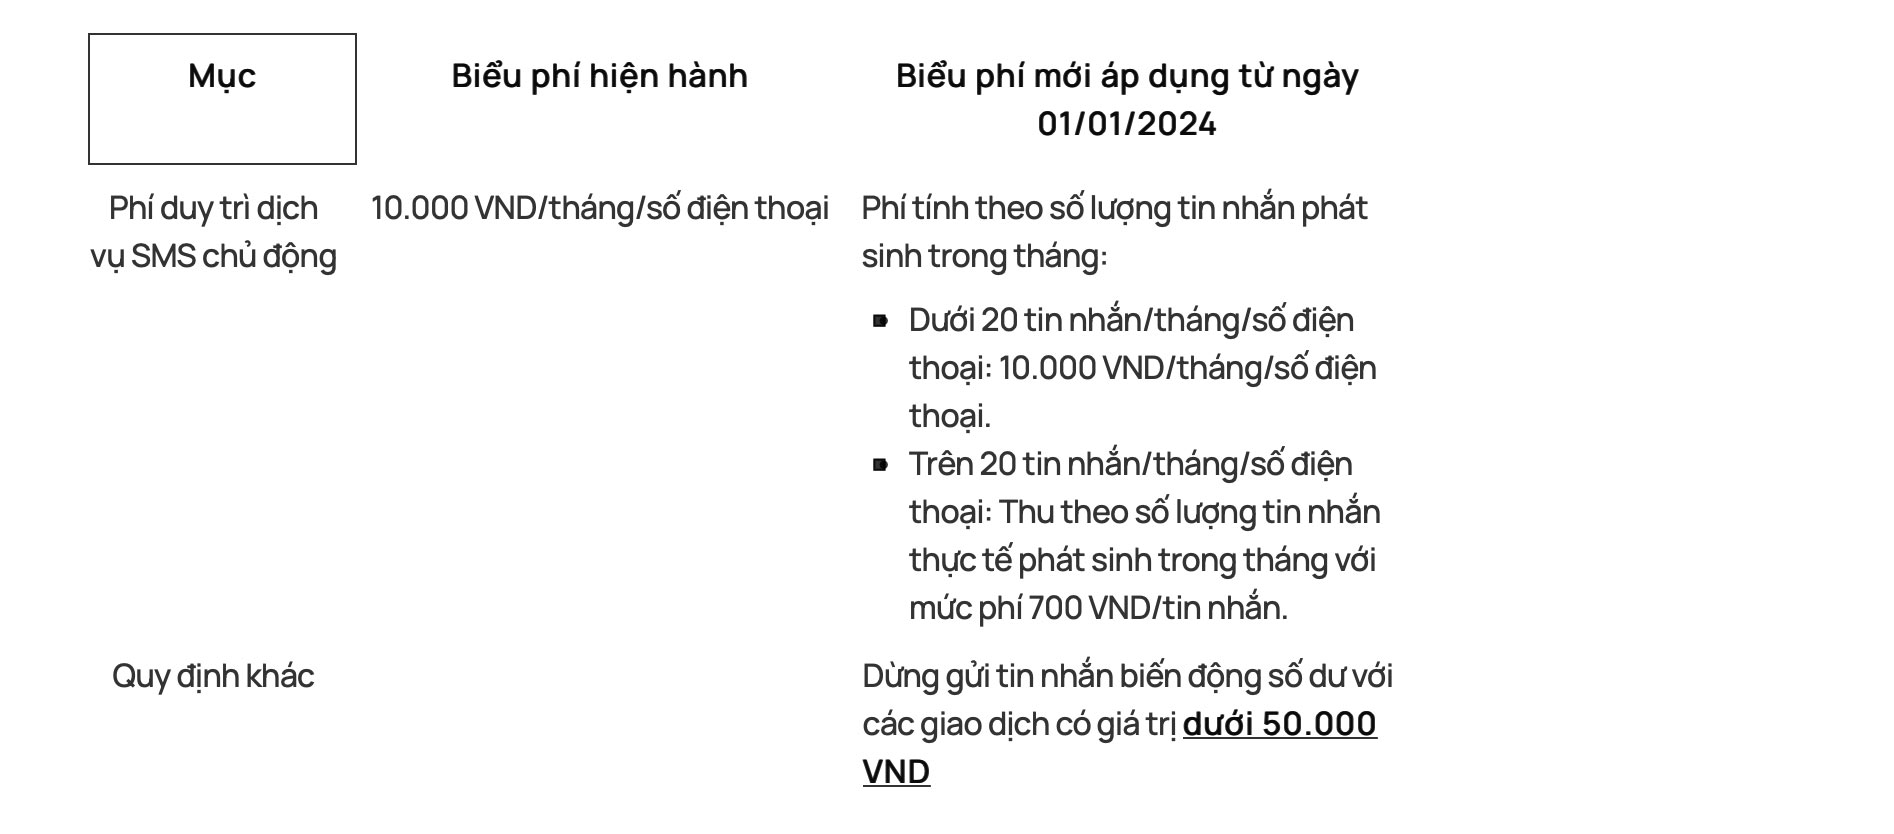 Thông báo tăng phí SMS của Vietcombank. Ảnh trích chụp màn hình.